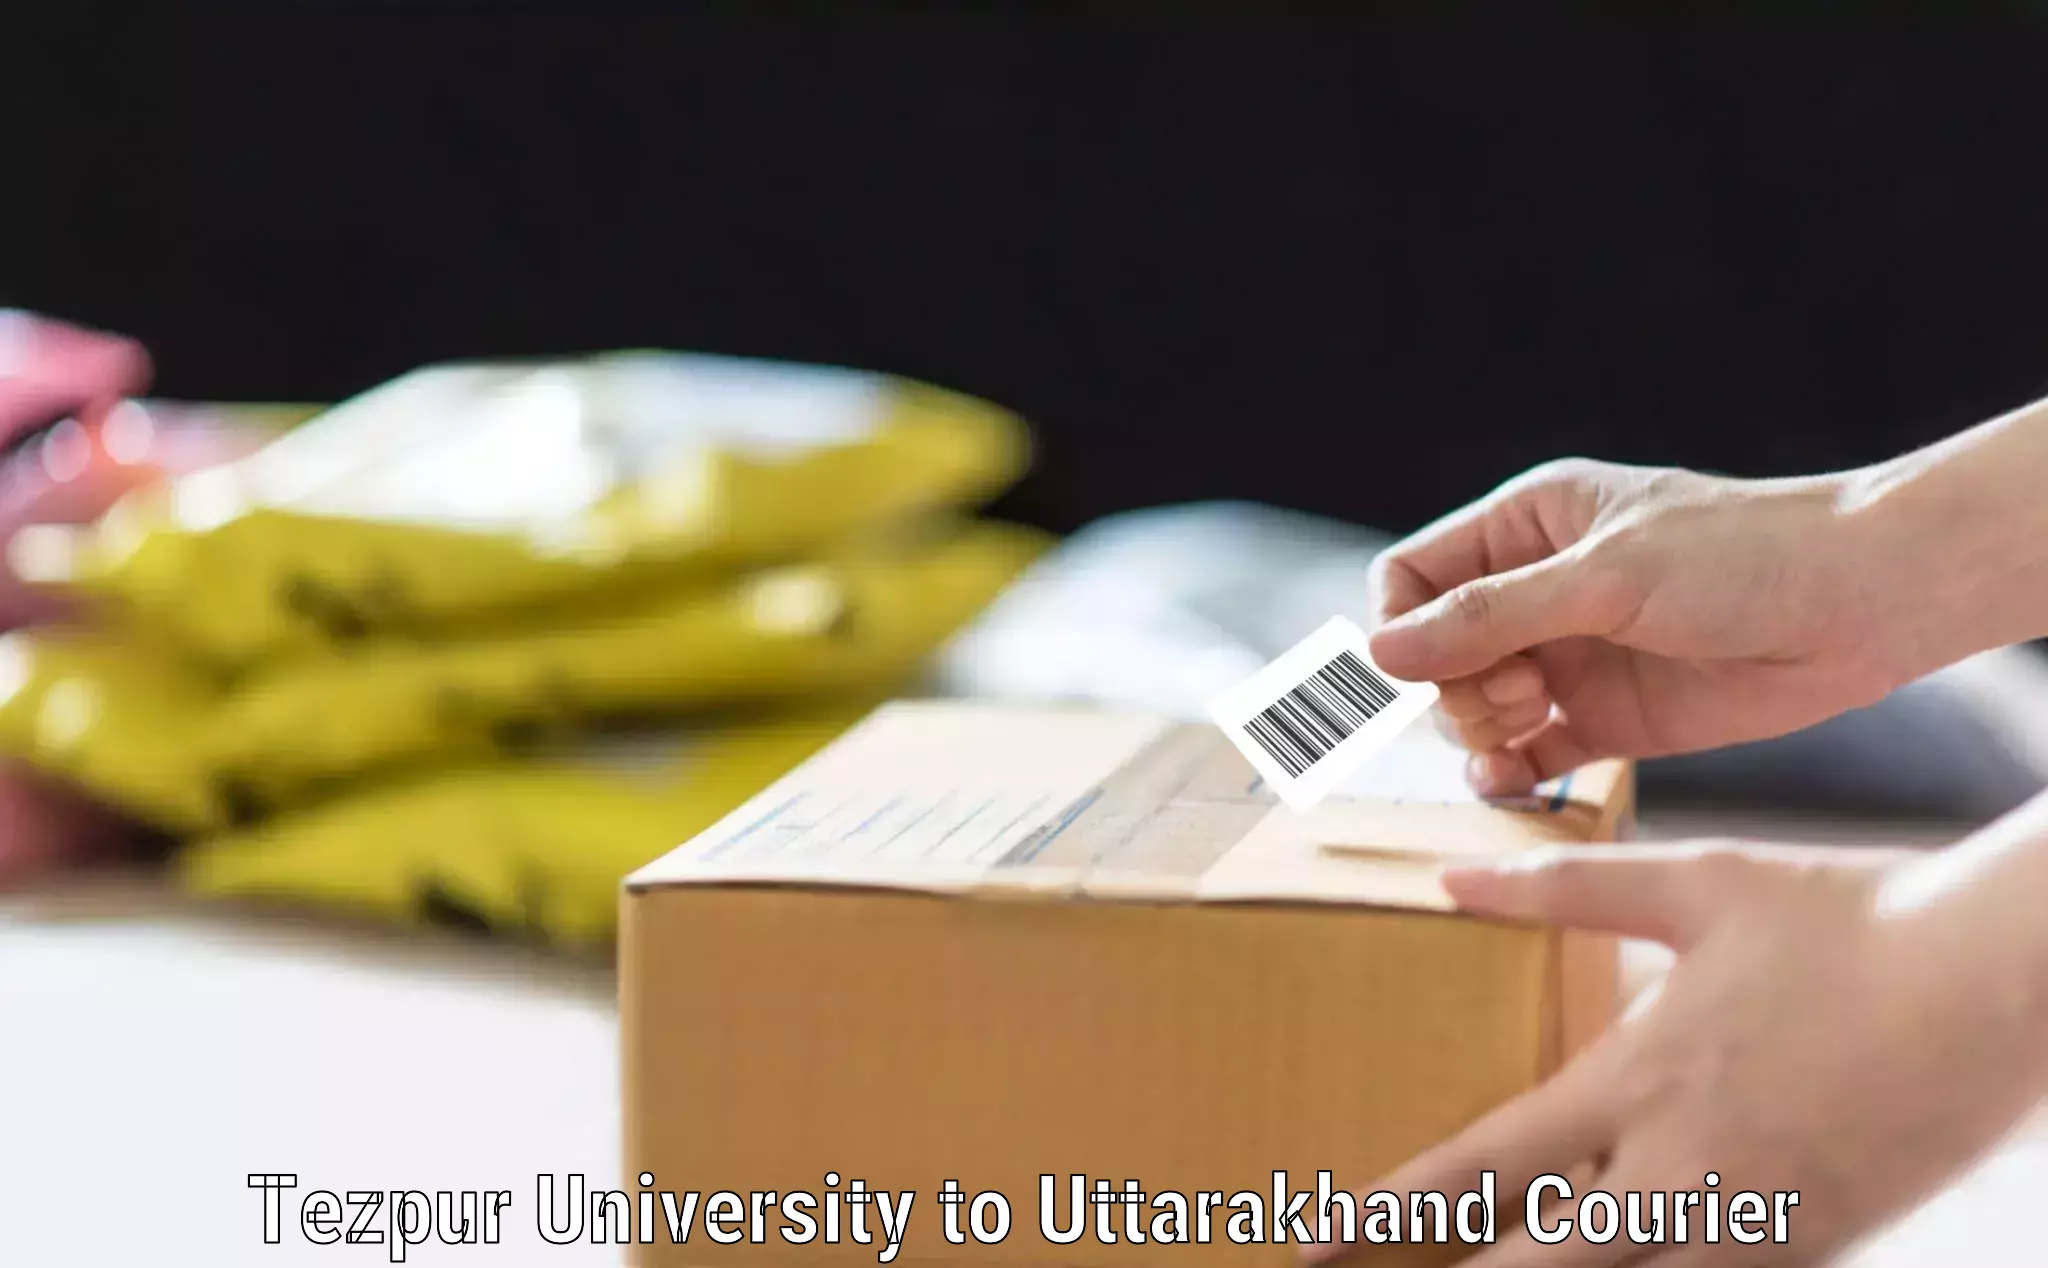 Automated luggage transport Tezpur University to Uttarakhand